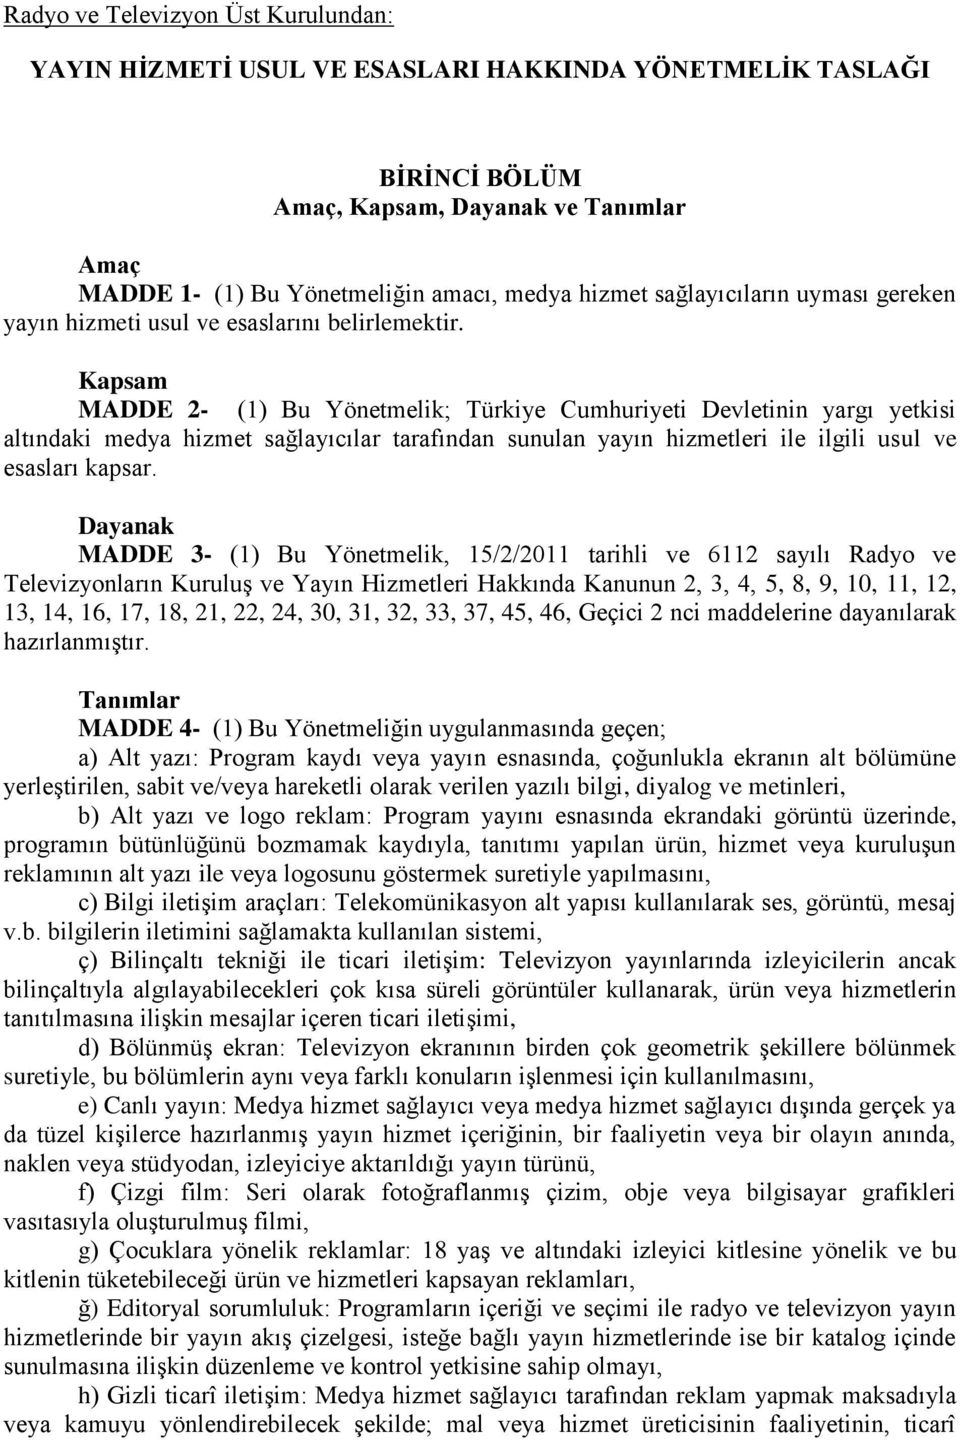 Kapsam MADDE 2- (1) Bu Yönetmelik; Türkiye Cumhuriyeti Devletinin yargı yetkisi altındaki medya hizmet sağlayıcılar tarafından sunulan yayın hizmetleri ile ilgili usul ve esasları kapsar.